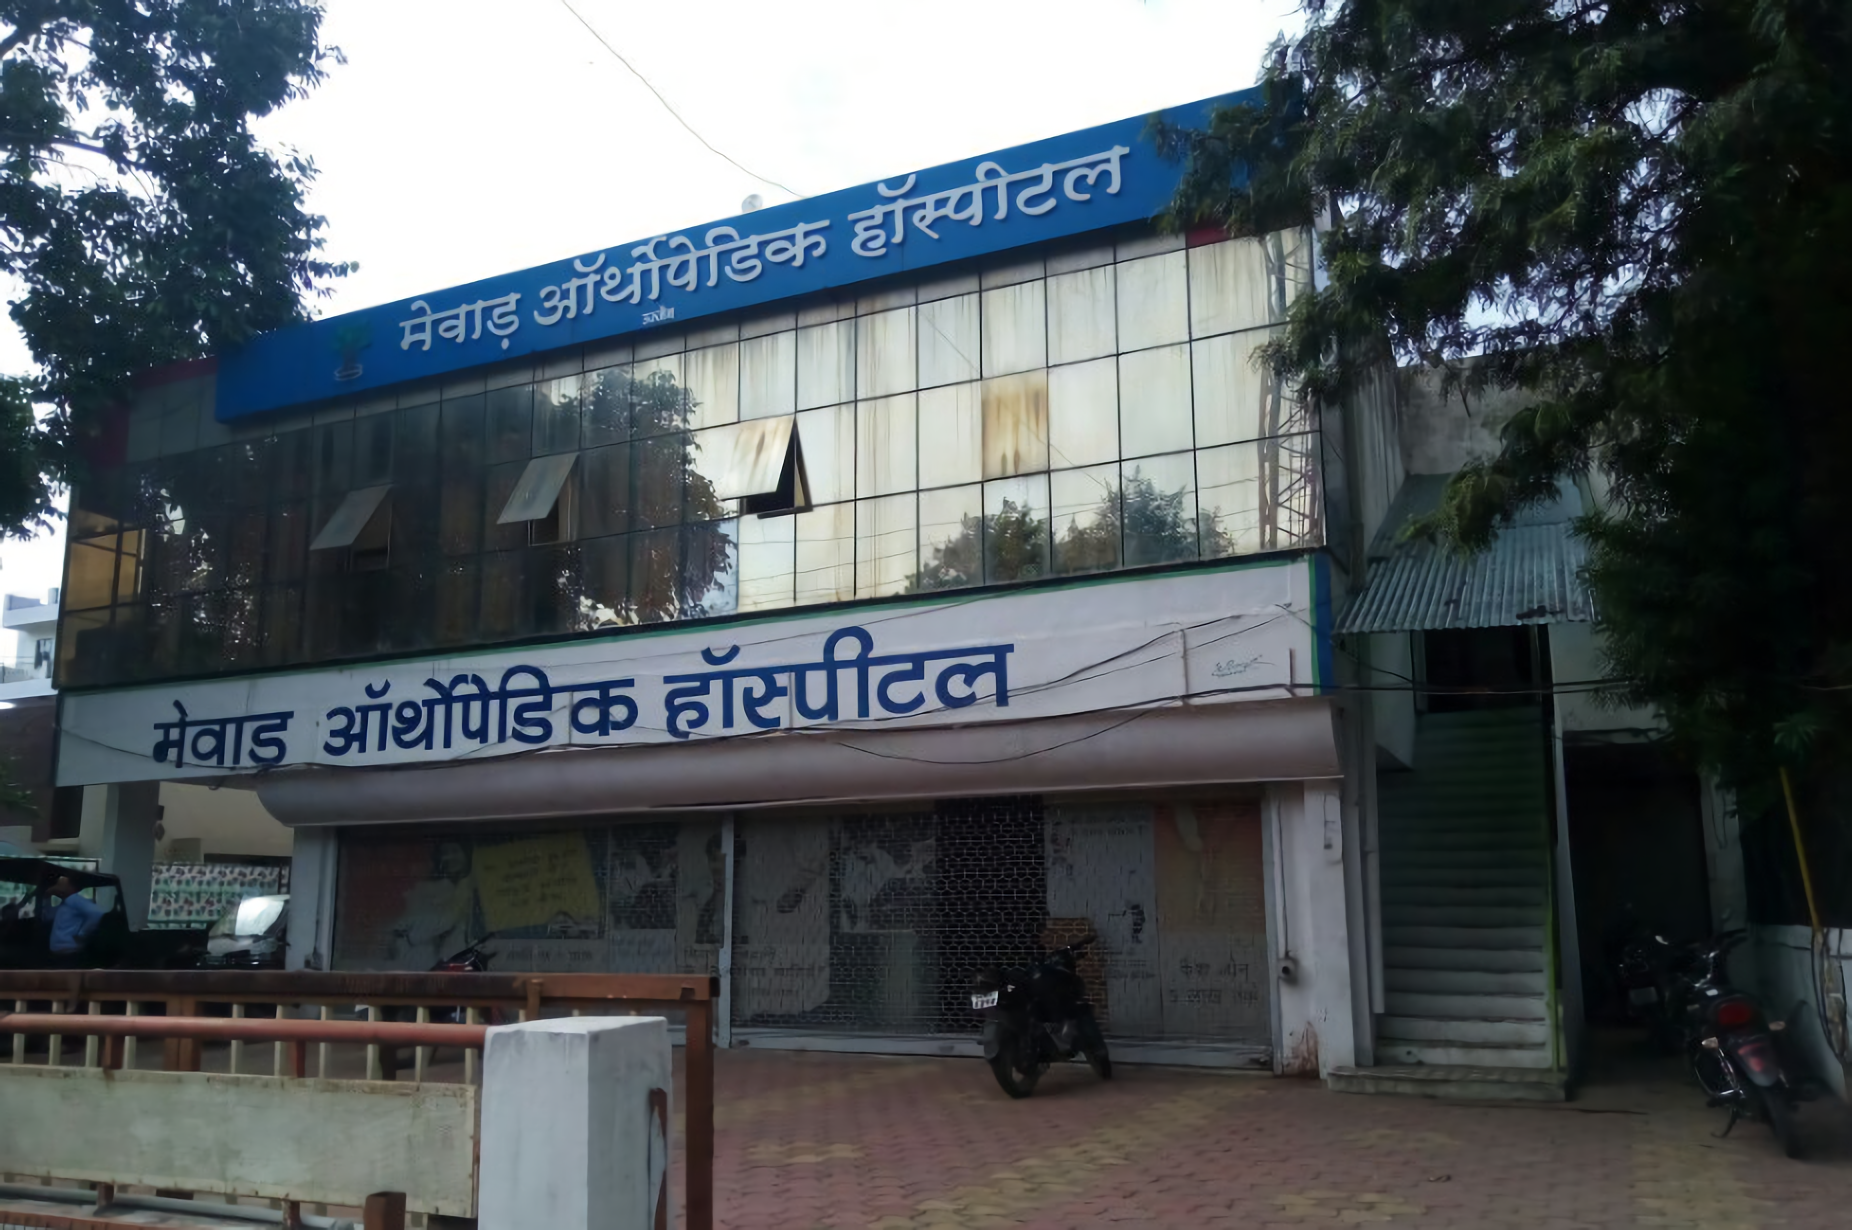 Mewar Hospital